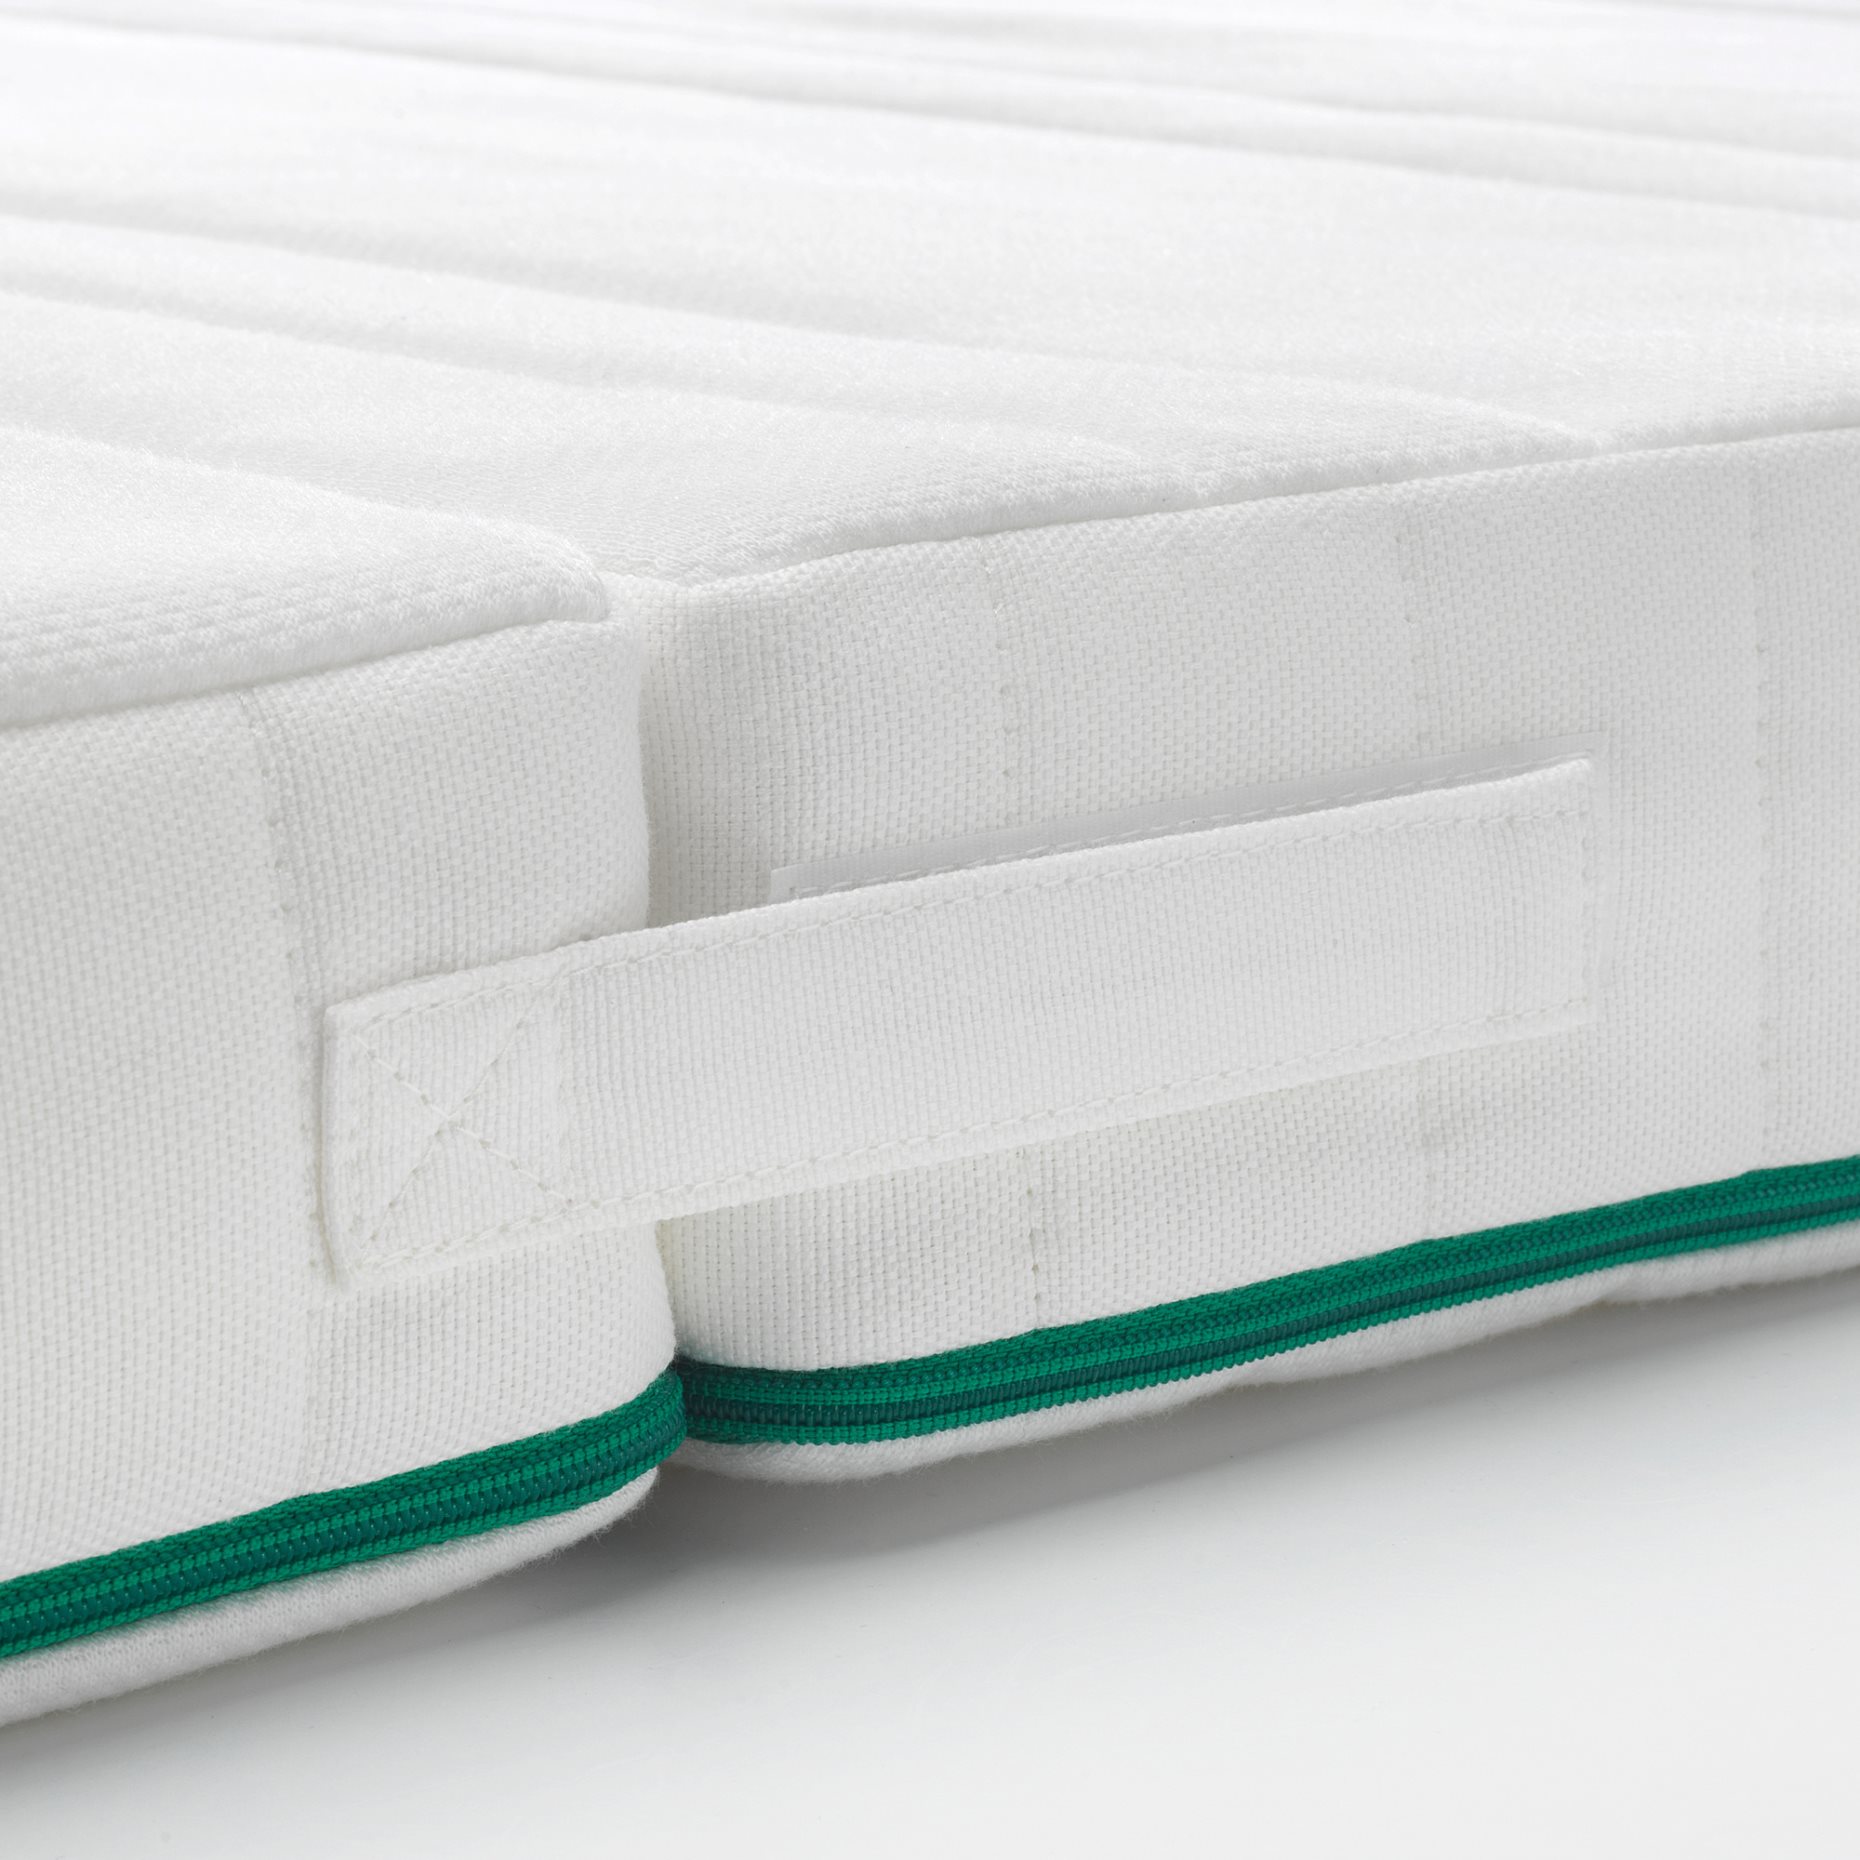 NATTSMYG, foam mattress for extendable bed, 403.393.77